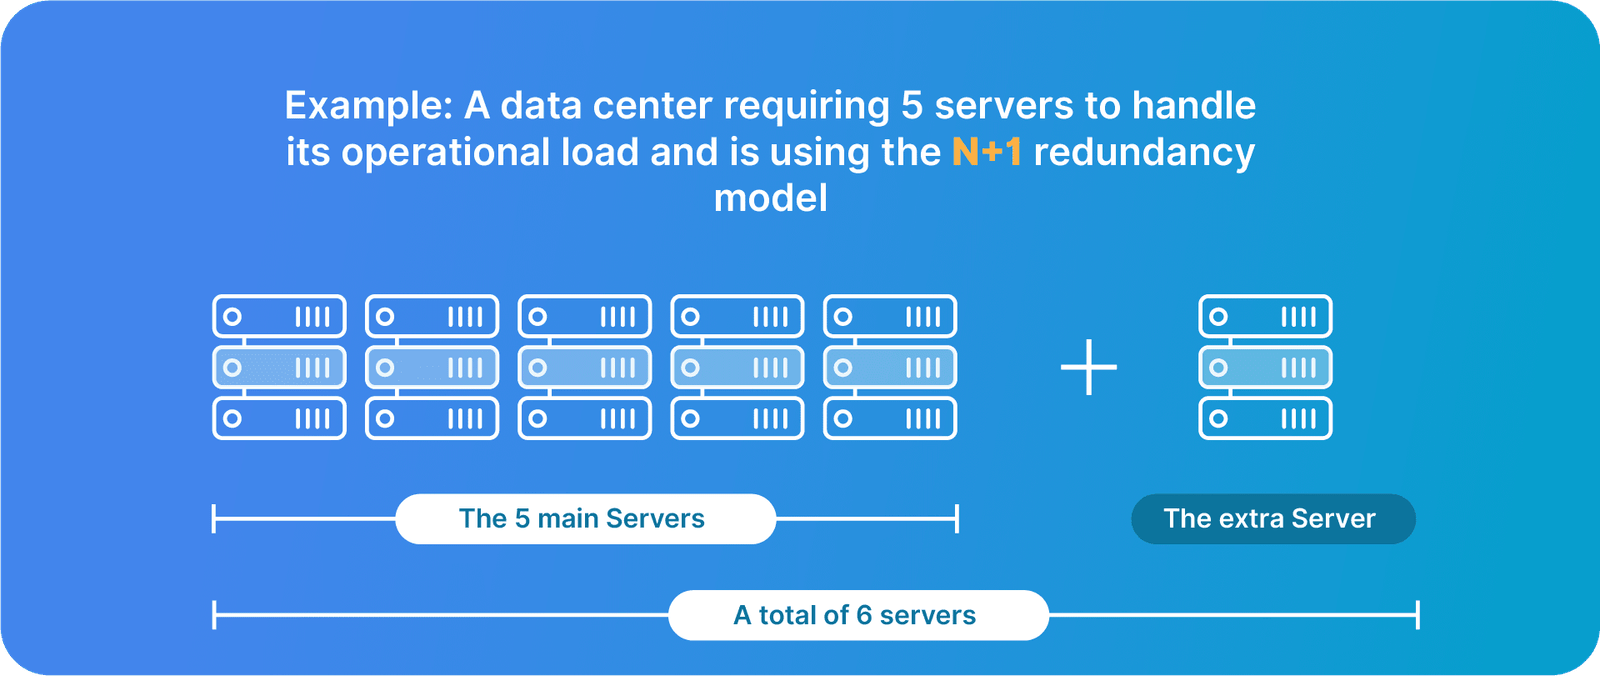 The N+1 model for data center redundancy.